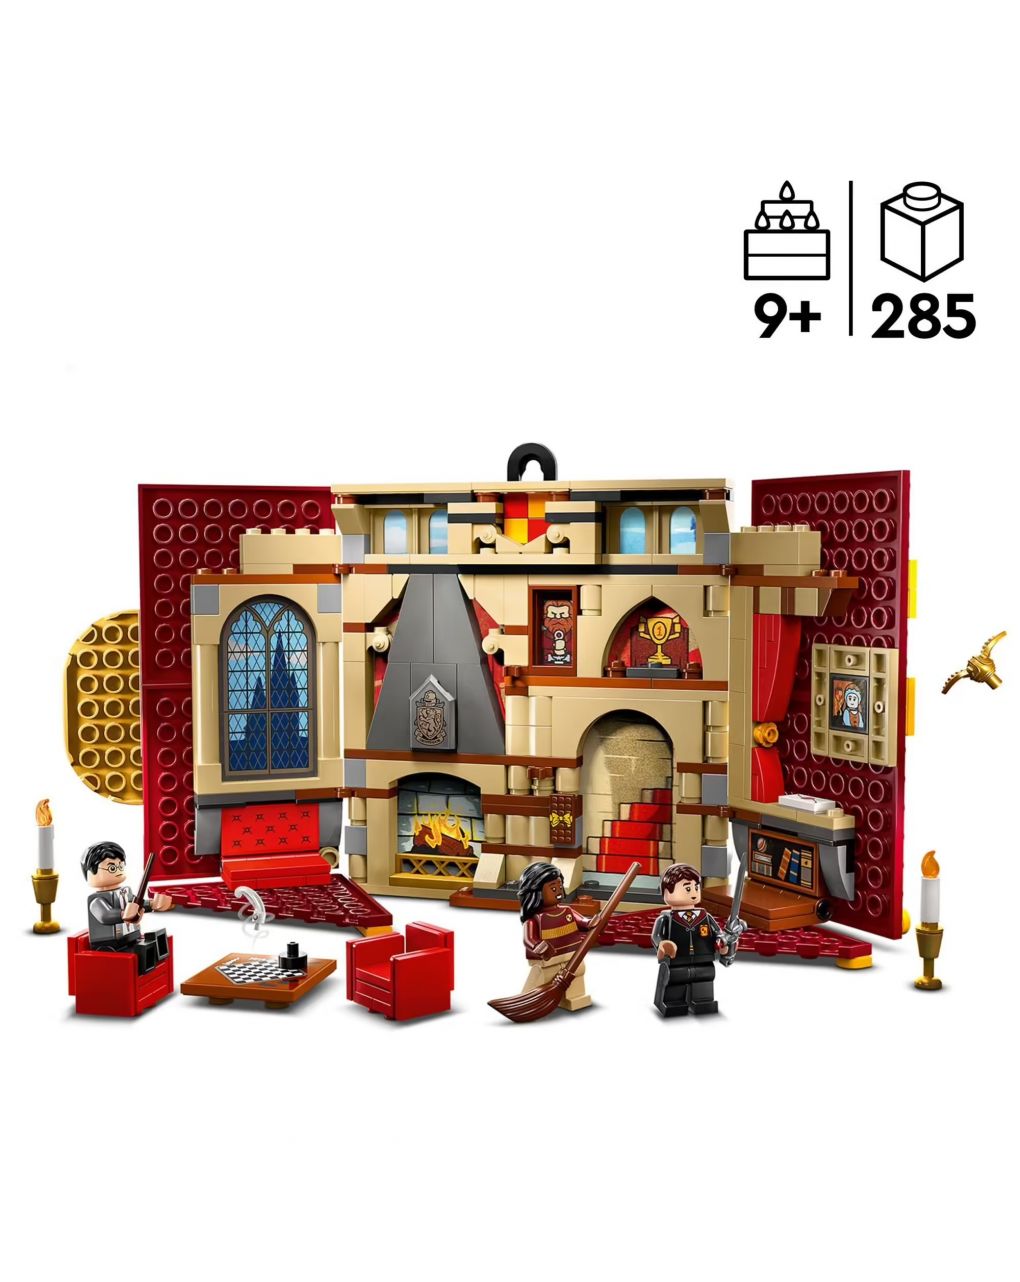 Stendardo della casa grifondoro da parete - sala comune castello di hogwarts - lego harry potter - LEGO